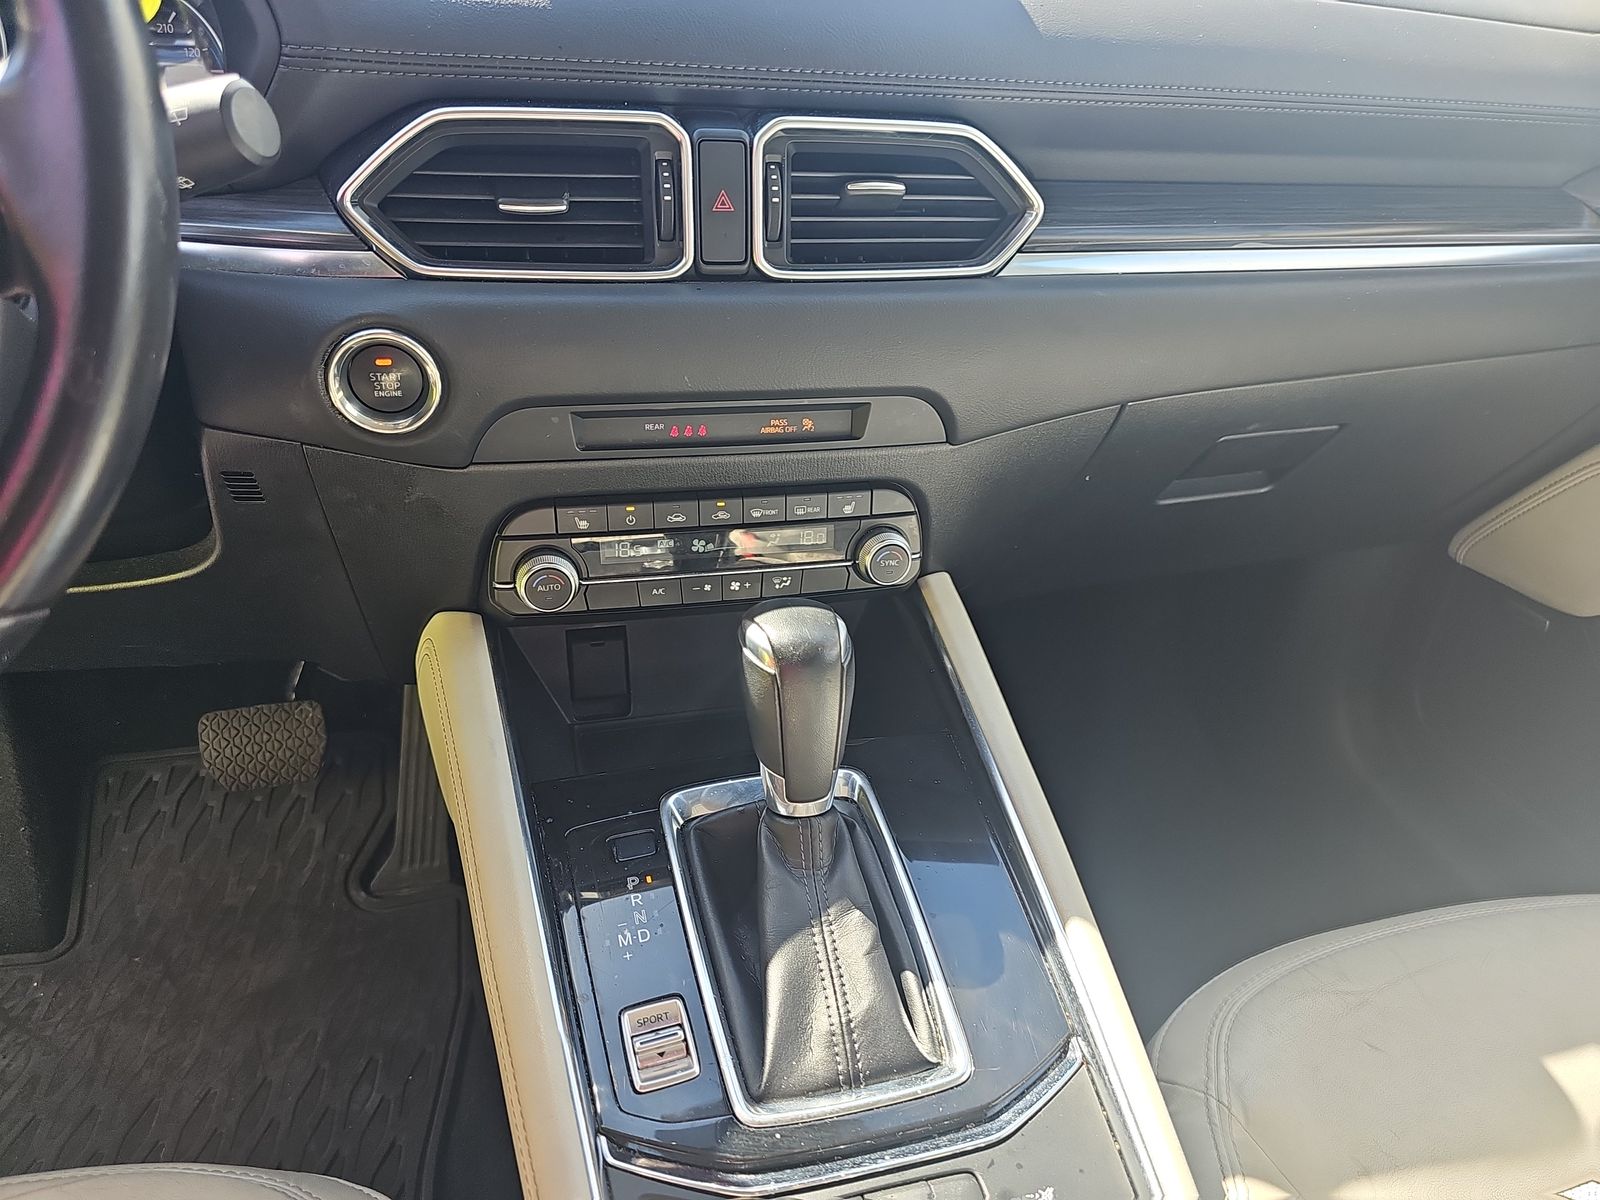 2019 MAZDA CX-5 Grand Touring FWD